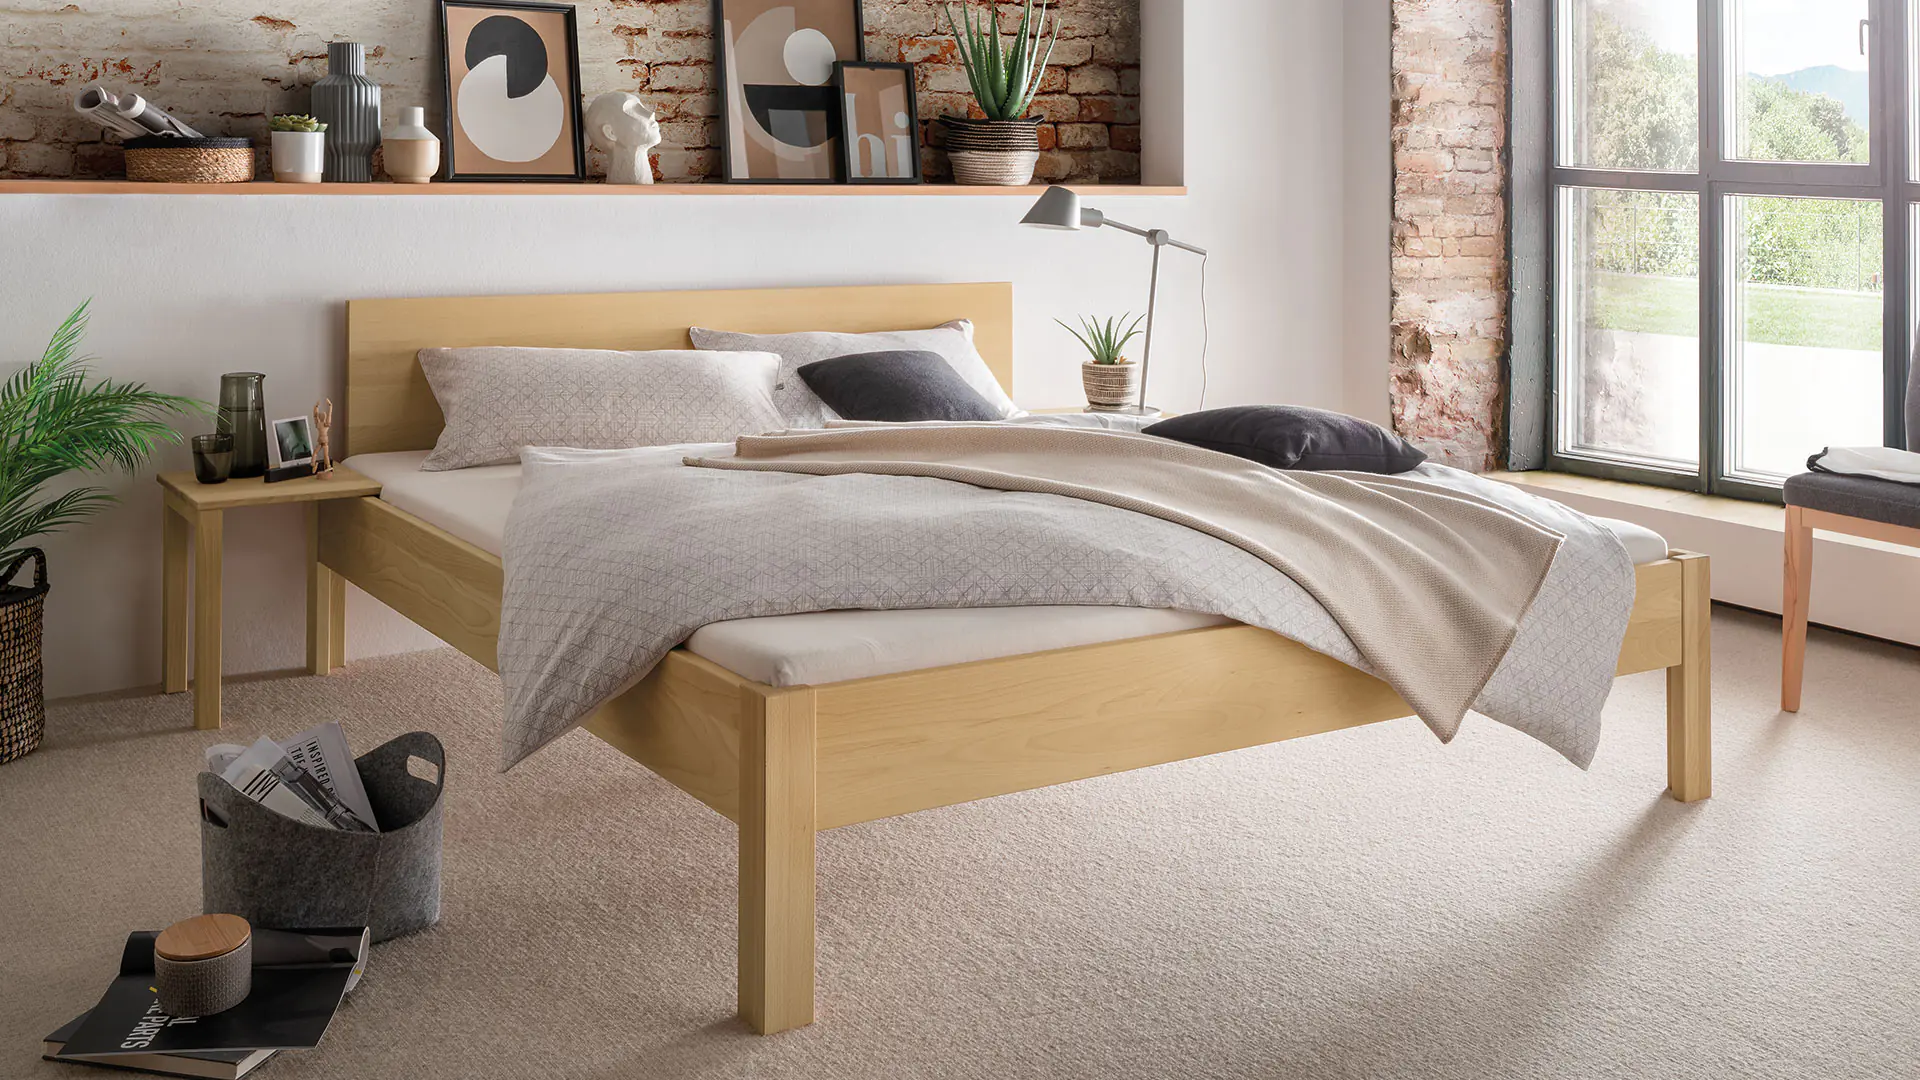 Recodo massief houten bed met gereduceerde heldere vorm, hier in beuk